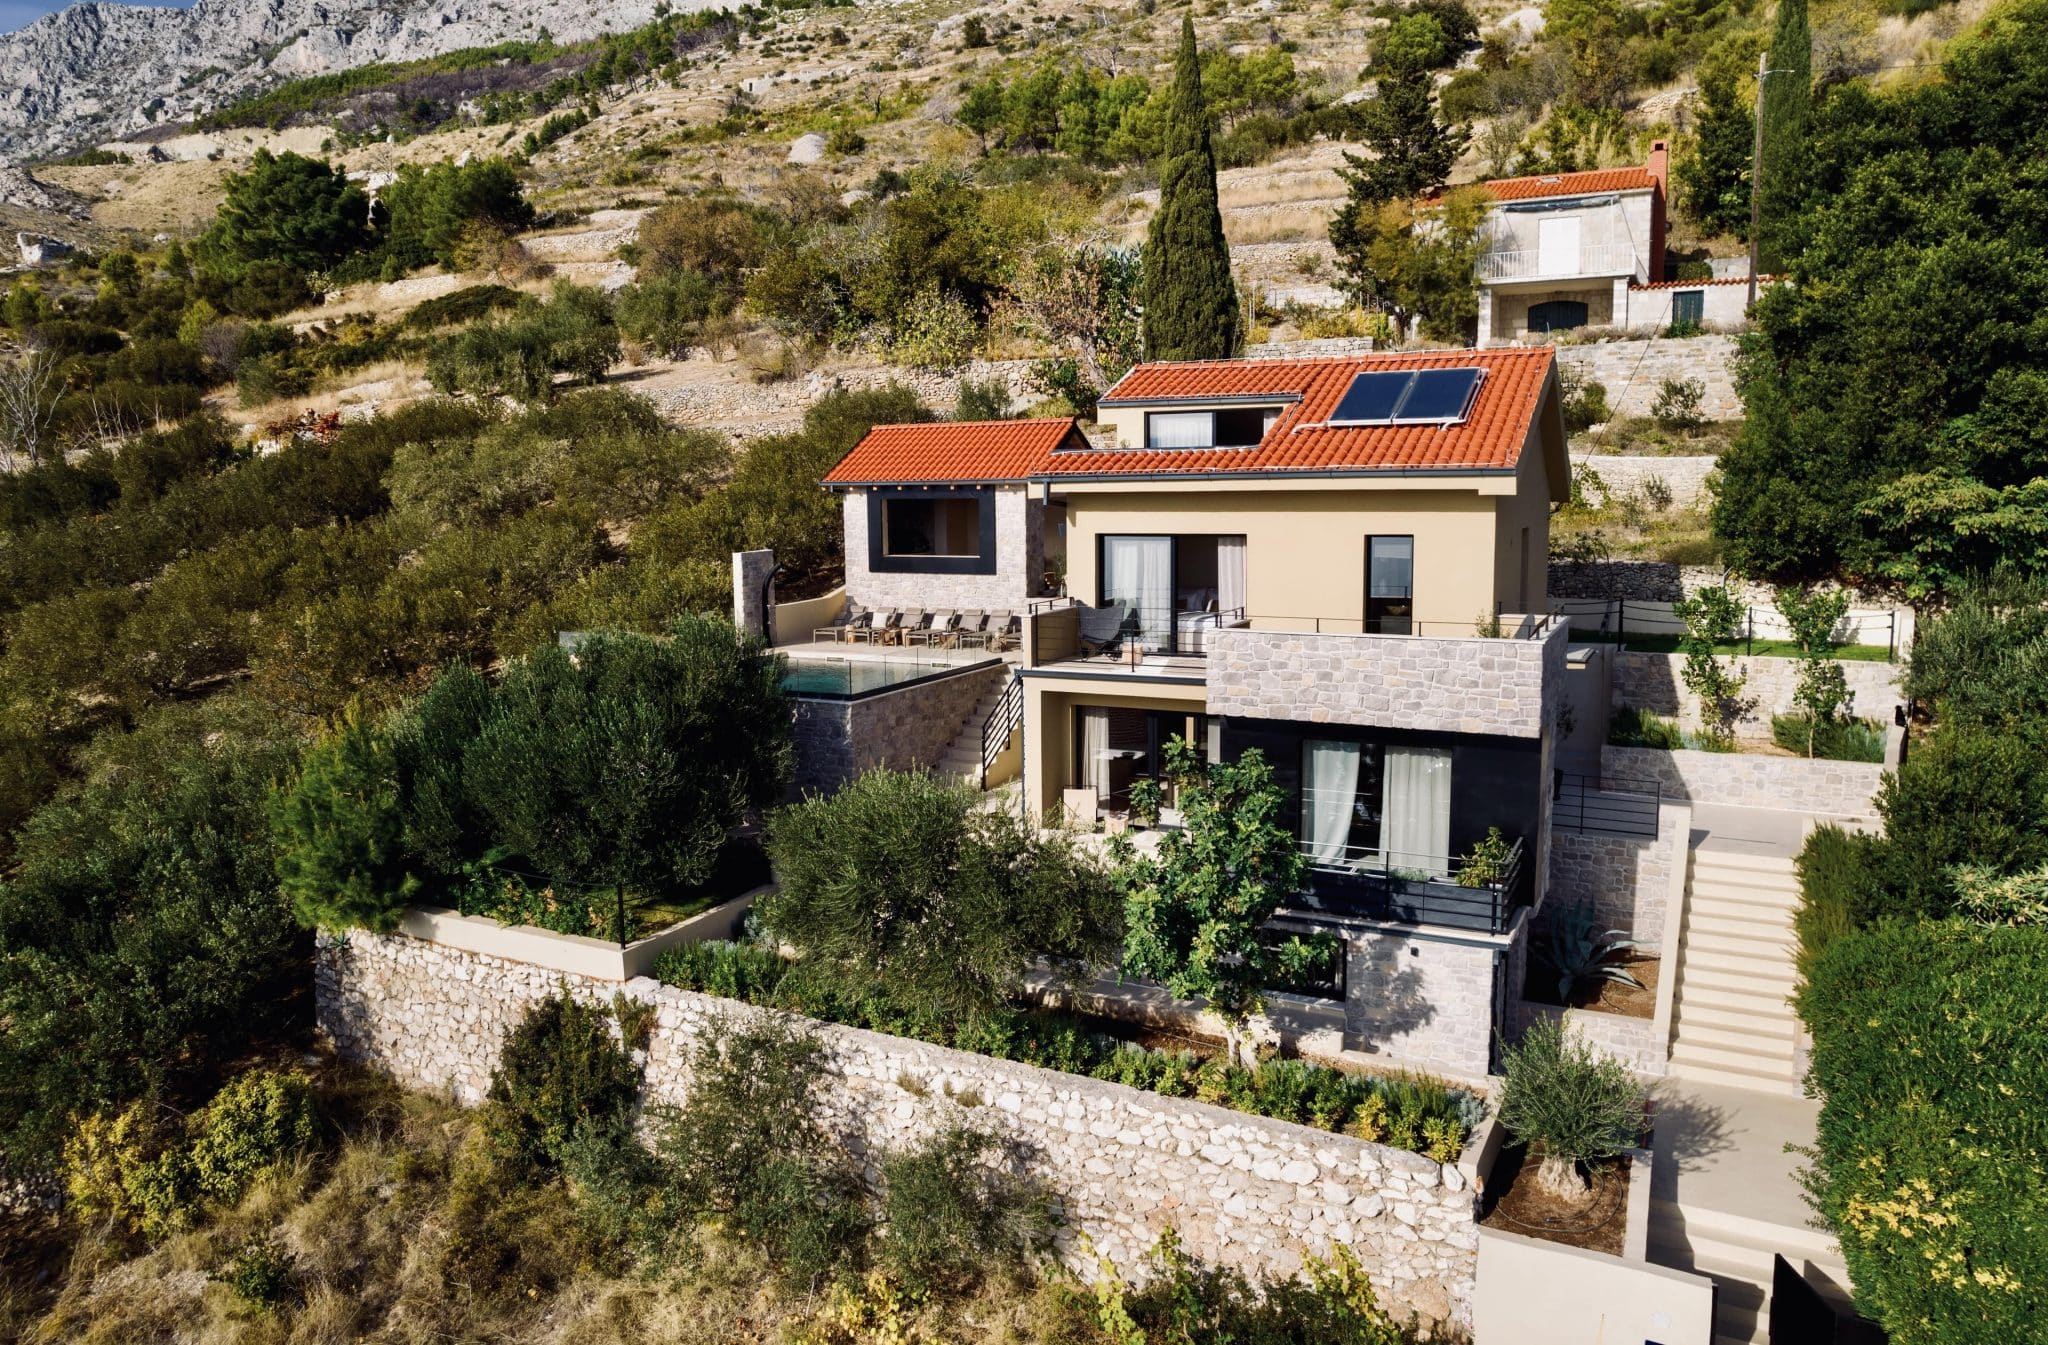 Elegantna vila na dalmatinski obali, ki uteleša lepoto Jadrana